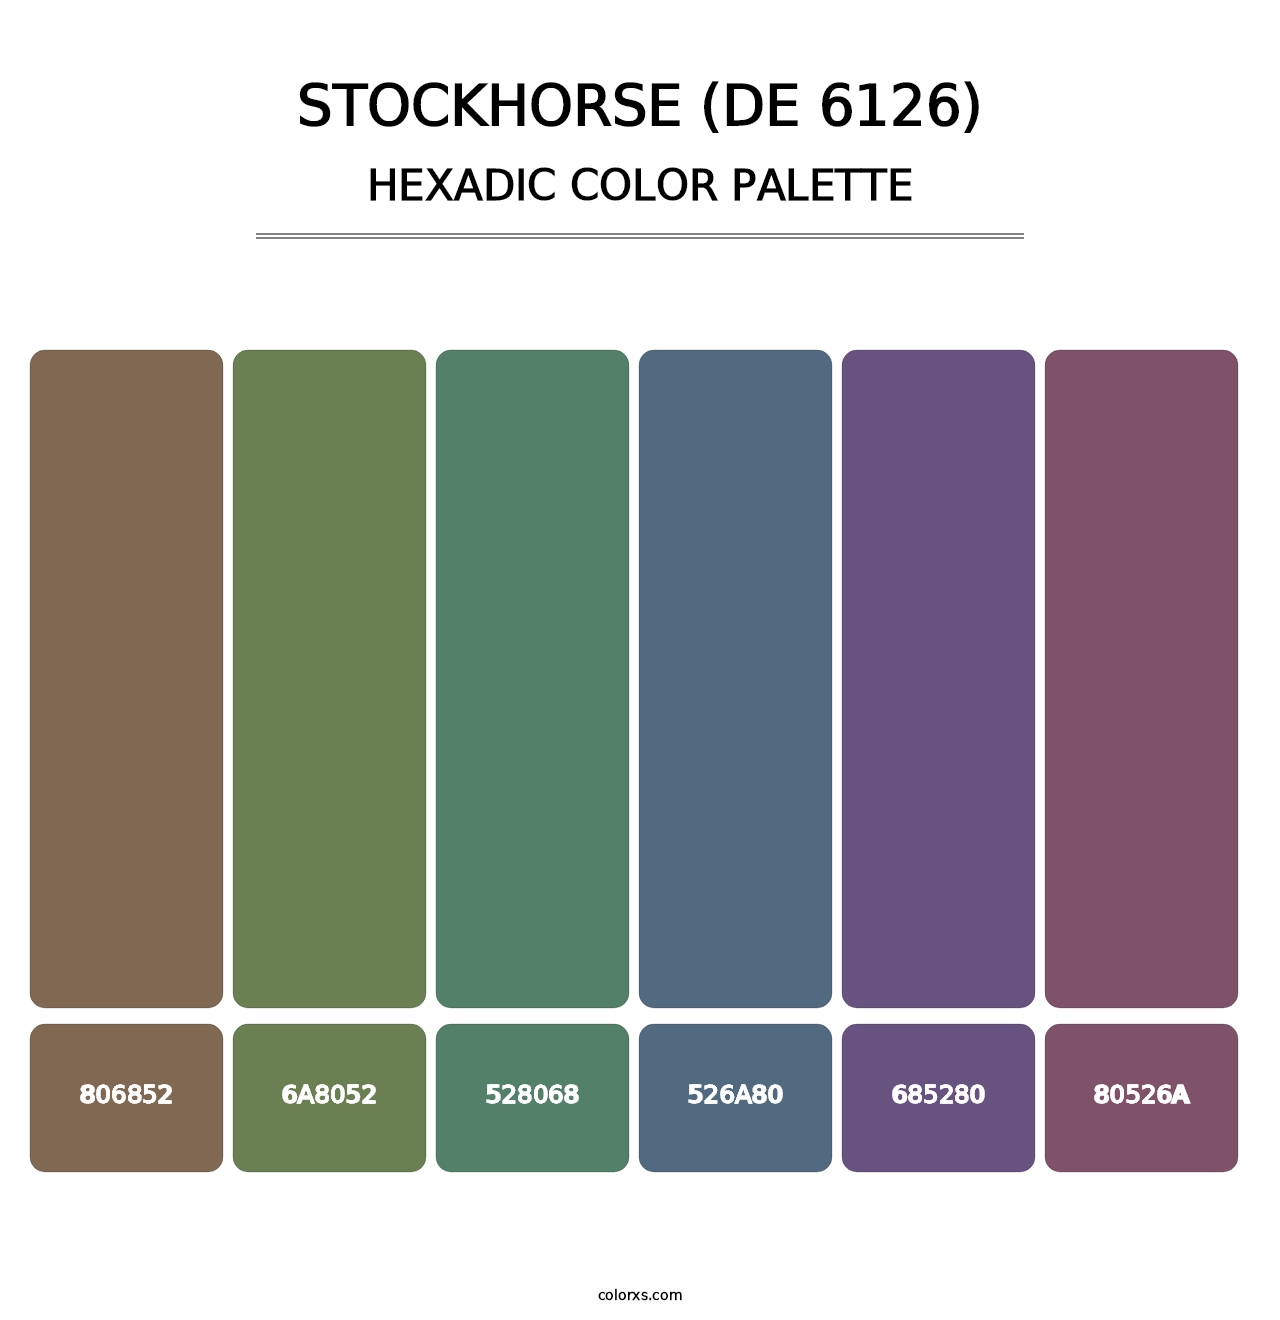 Stockhorse (DE 6126) - Hexadic Color Palette